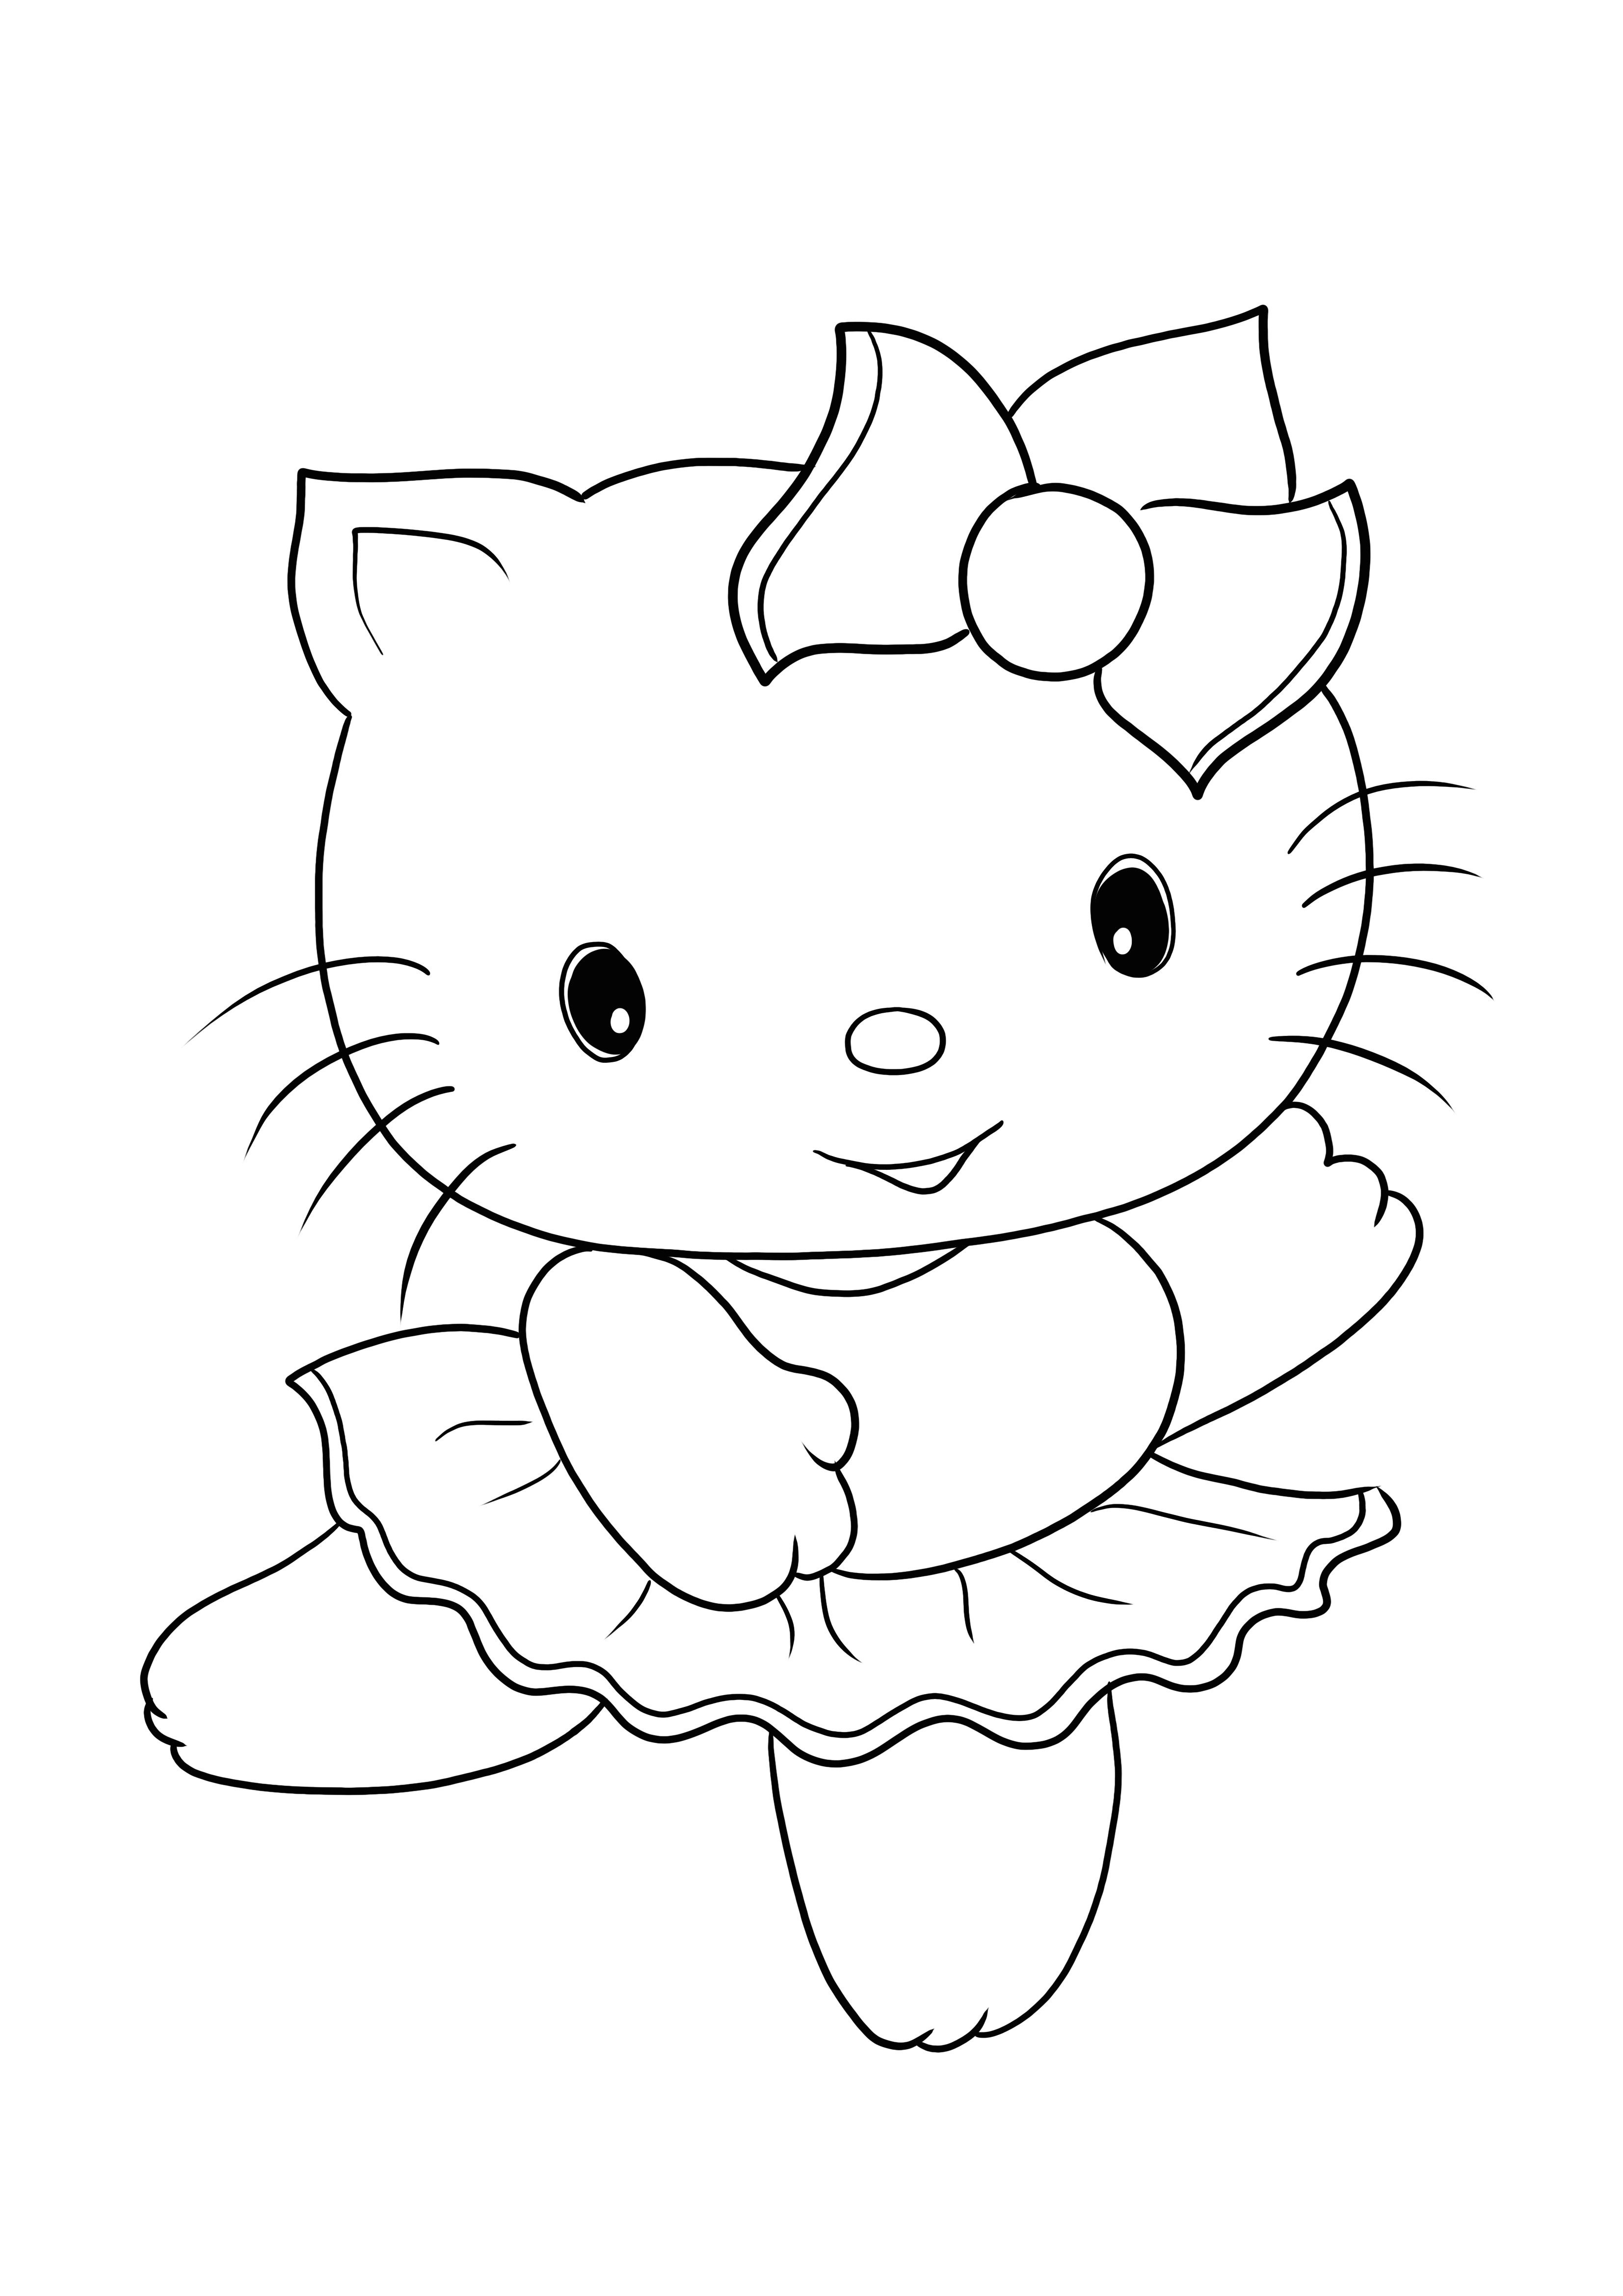 Impresión y coloreado gratis de la linda imagen de Hello Kitty para todas las edades.